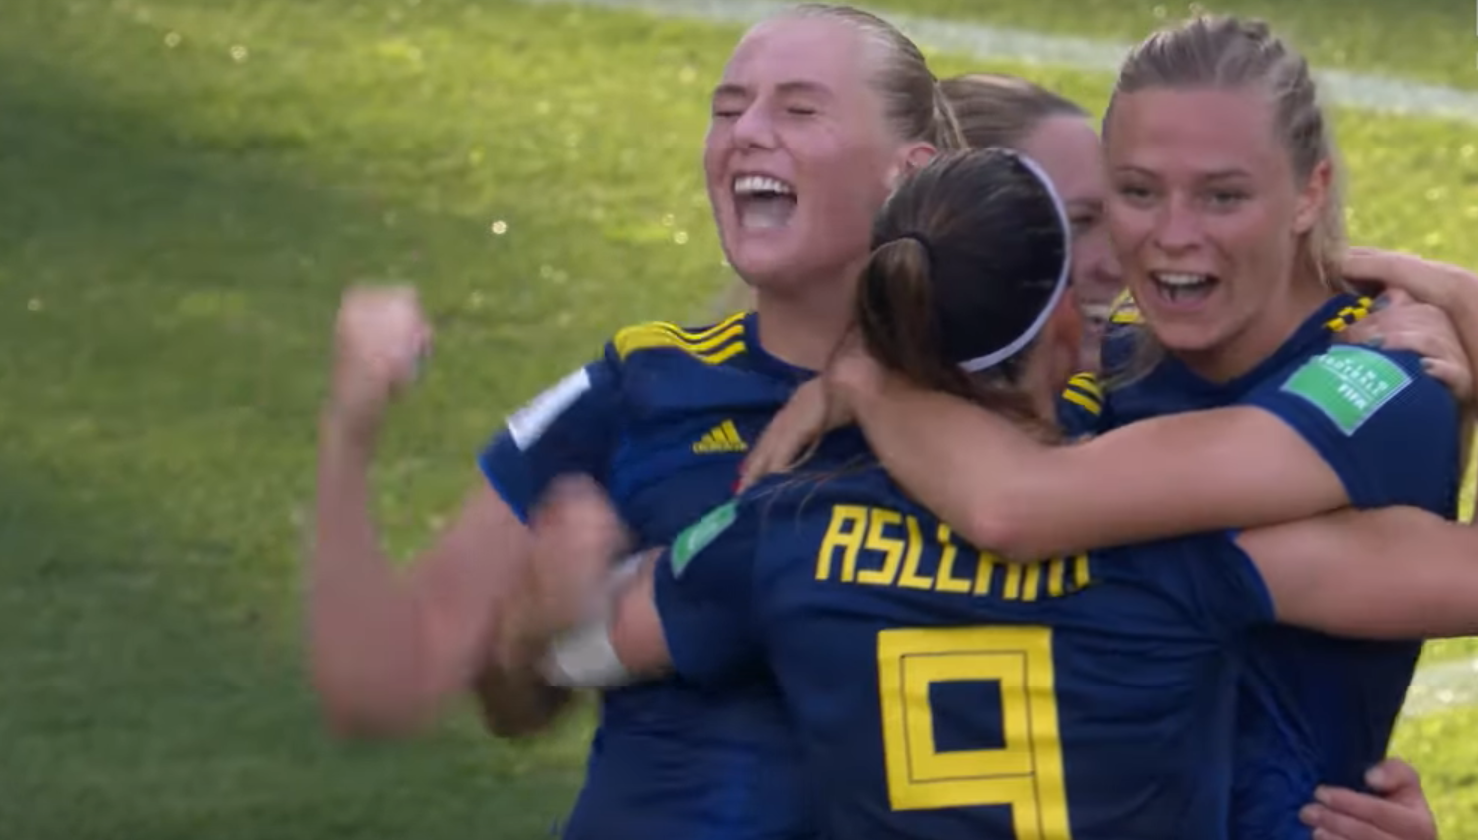 Färre spelbolag sponsrar svensk toppfotboll